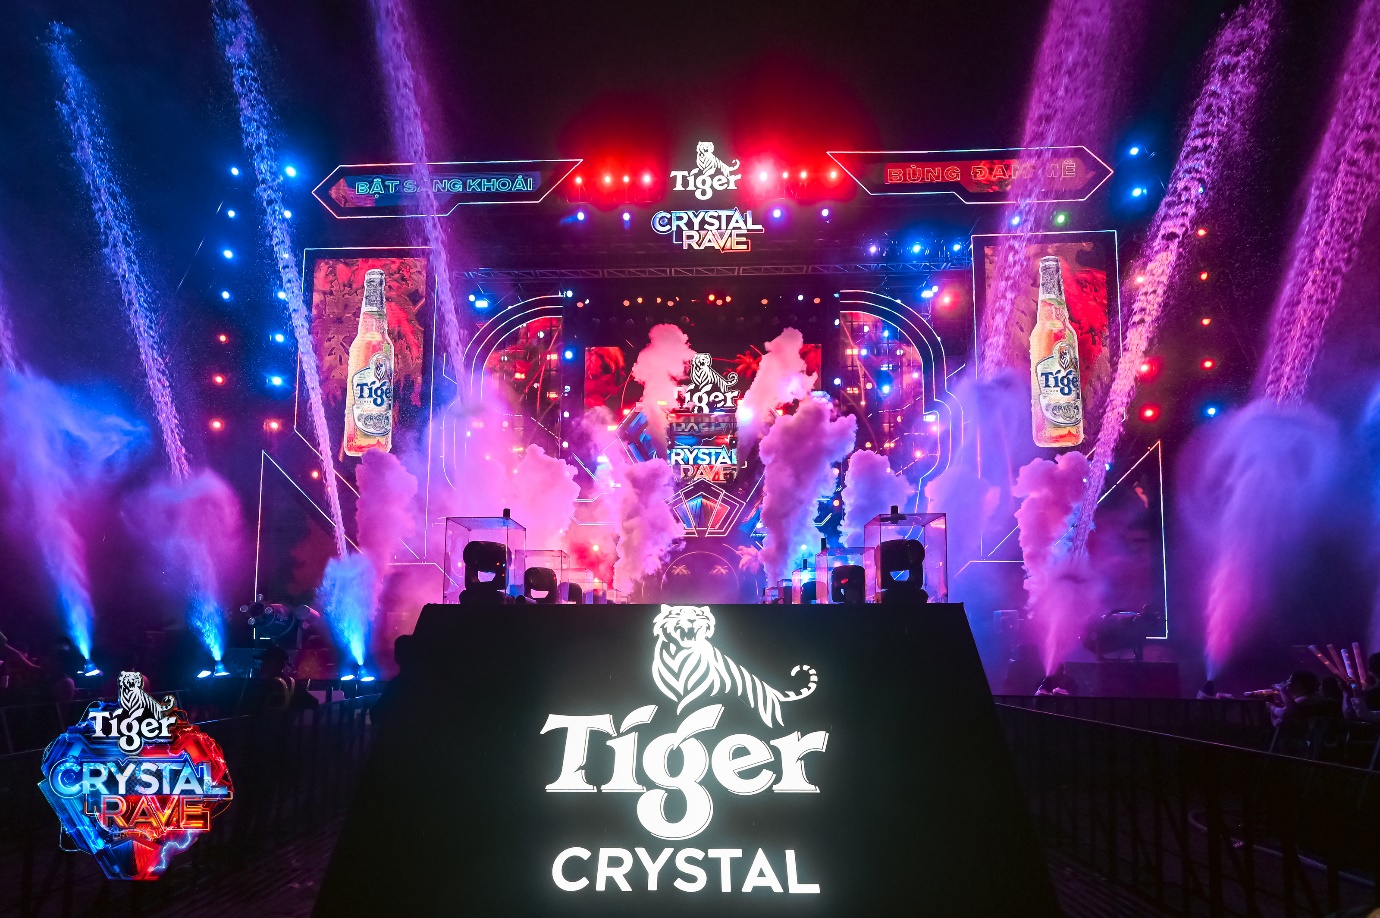 1 ngày trước giờ G: hình ảnh đầu tiên cho đại tiệc quẩy “ướt không lối về” - Tiger Crystal Rave 2.0 - Ảnh 5.